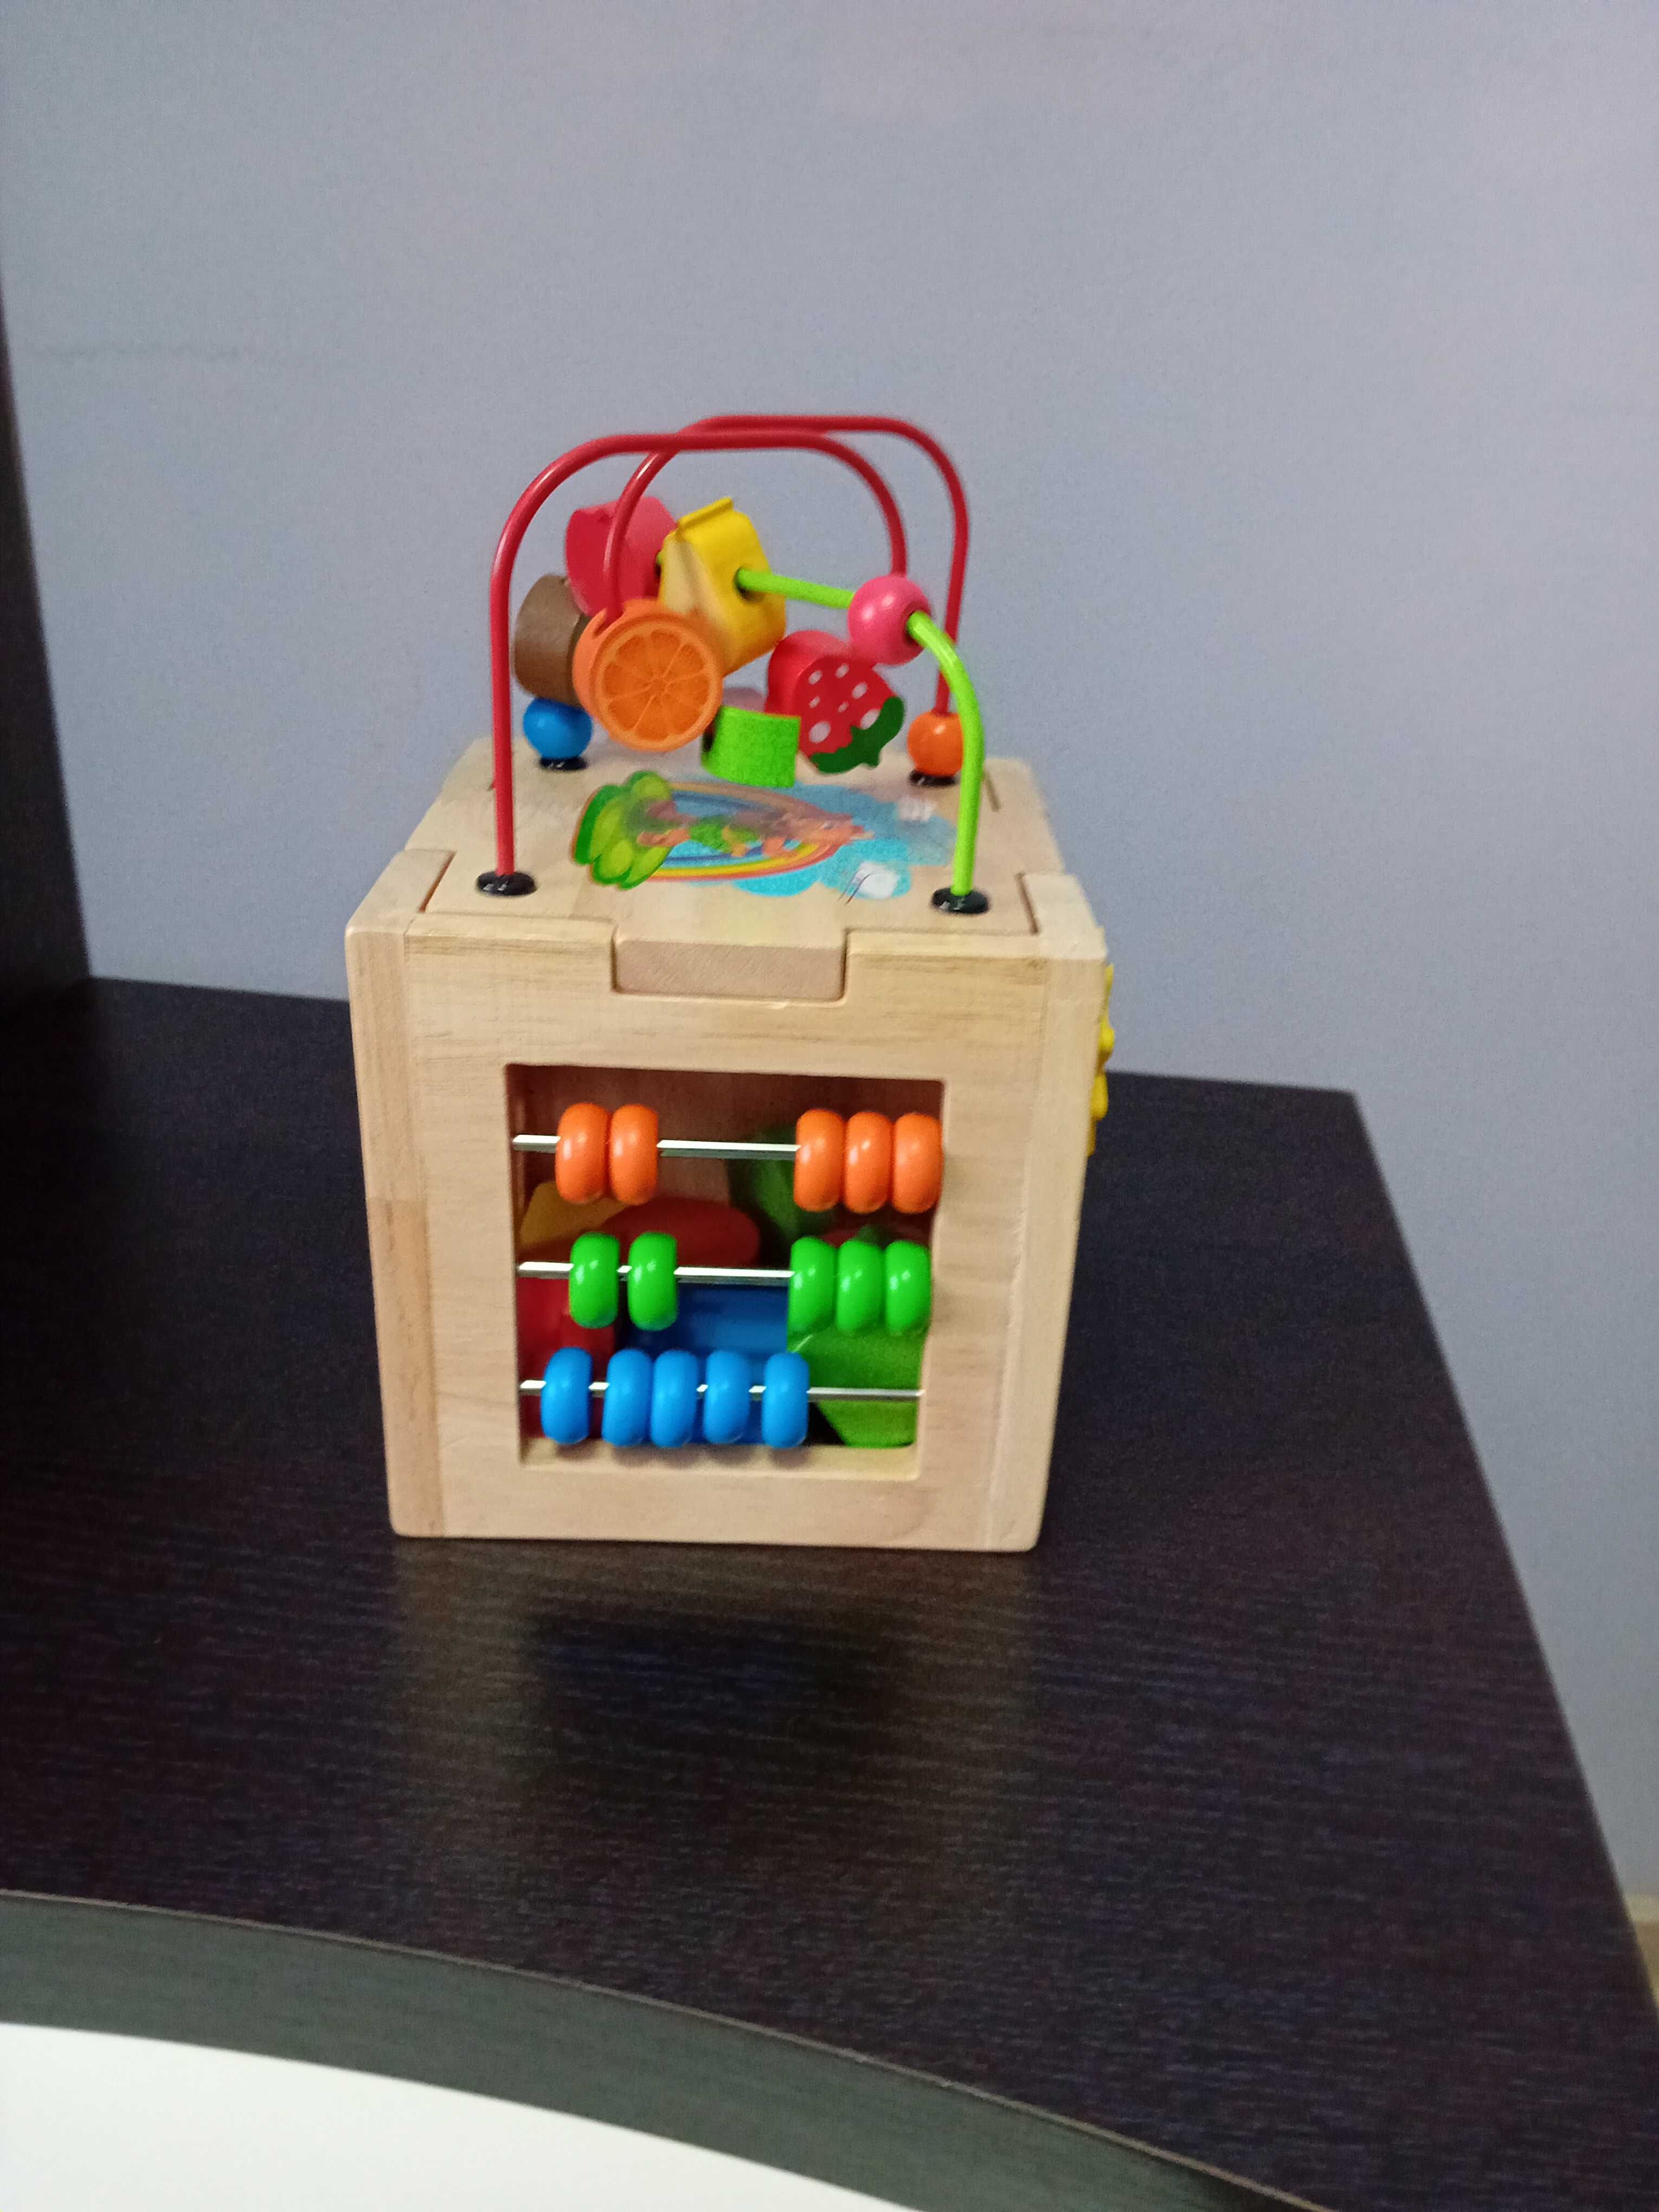 Cub din lemn cu activități educative